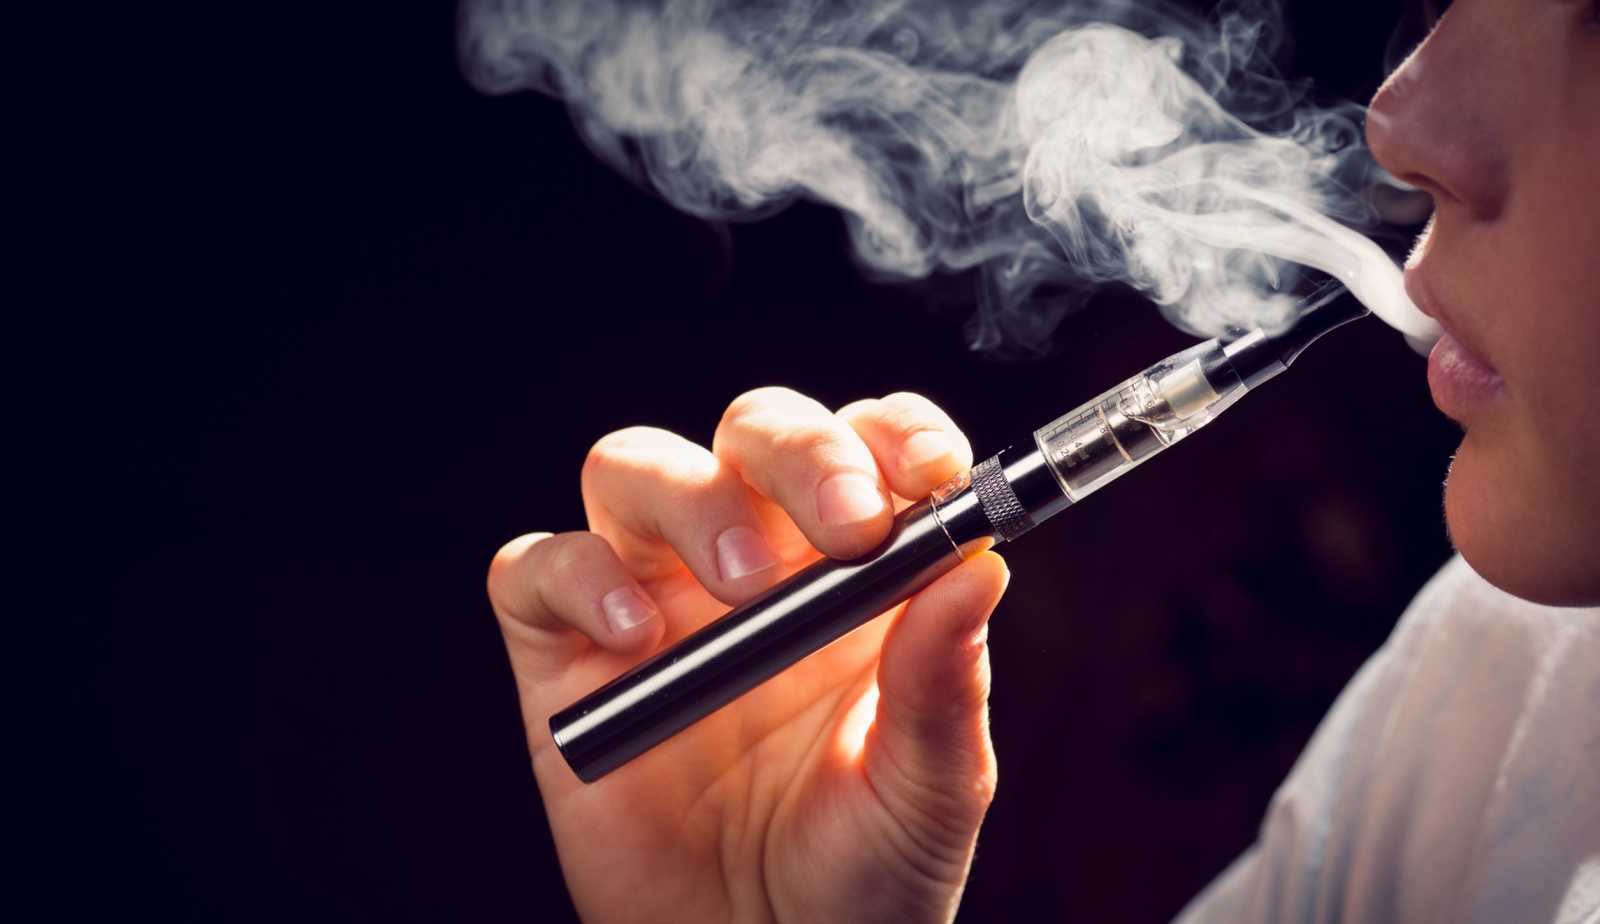 Έρευνα: Αυτή η βλάβη στην υγεία μπορεί να προκύψει από το ηλεκτρονικό τσιγάρο